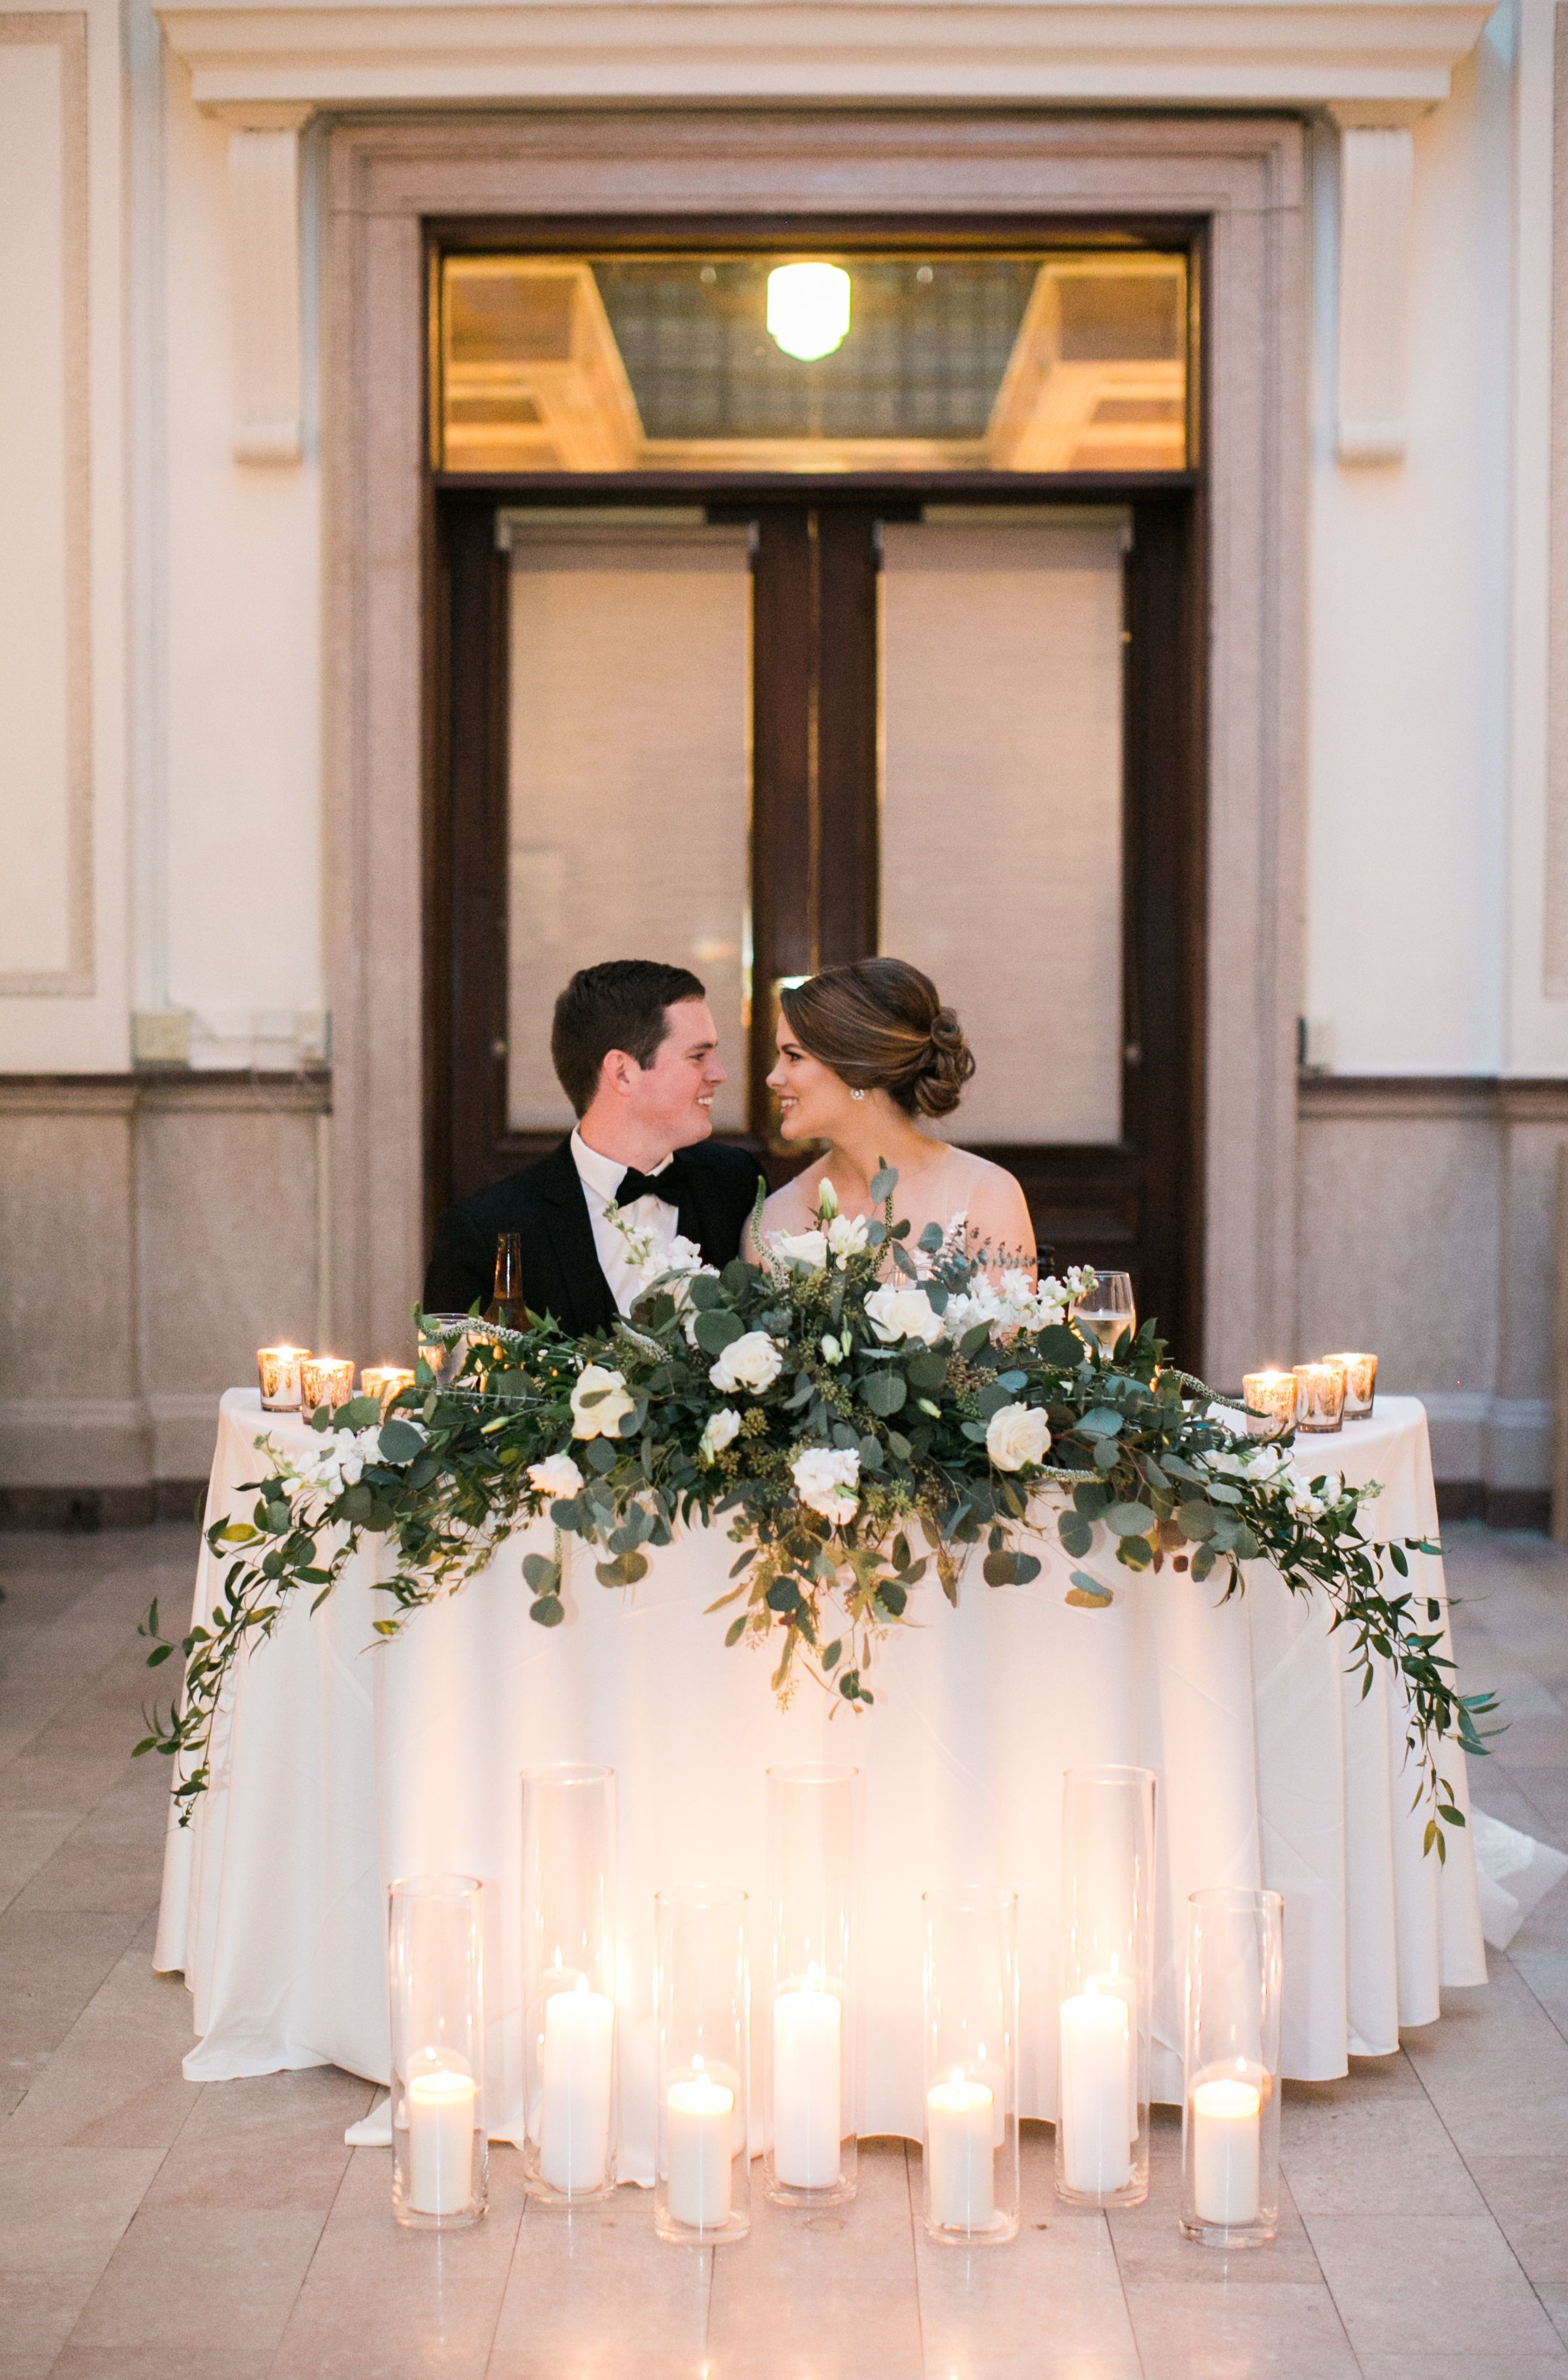 Jade Violet Wedding & Floral -   17 wedding Table romantic ideas